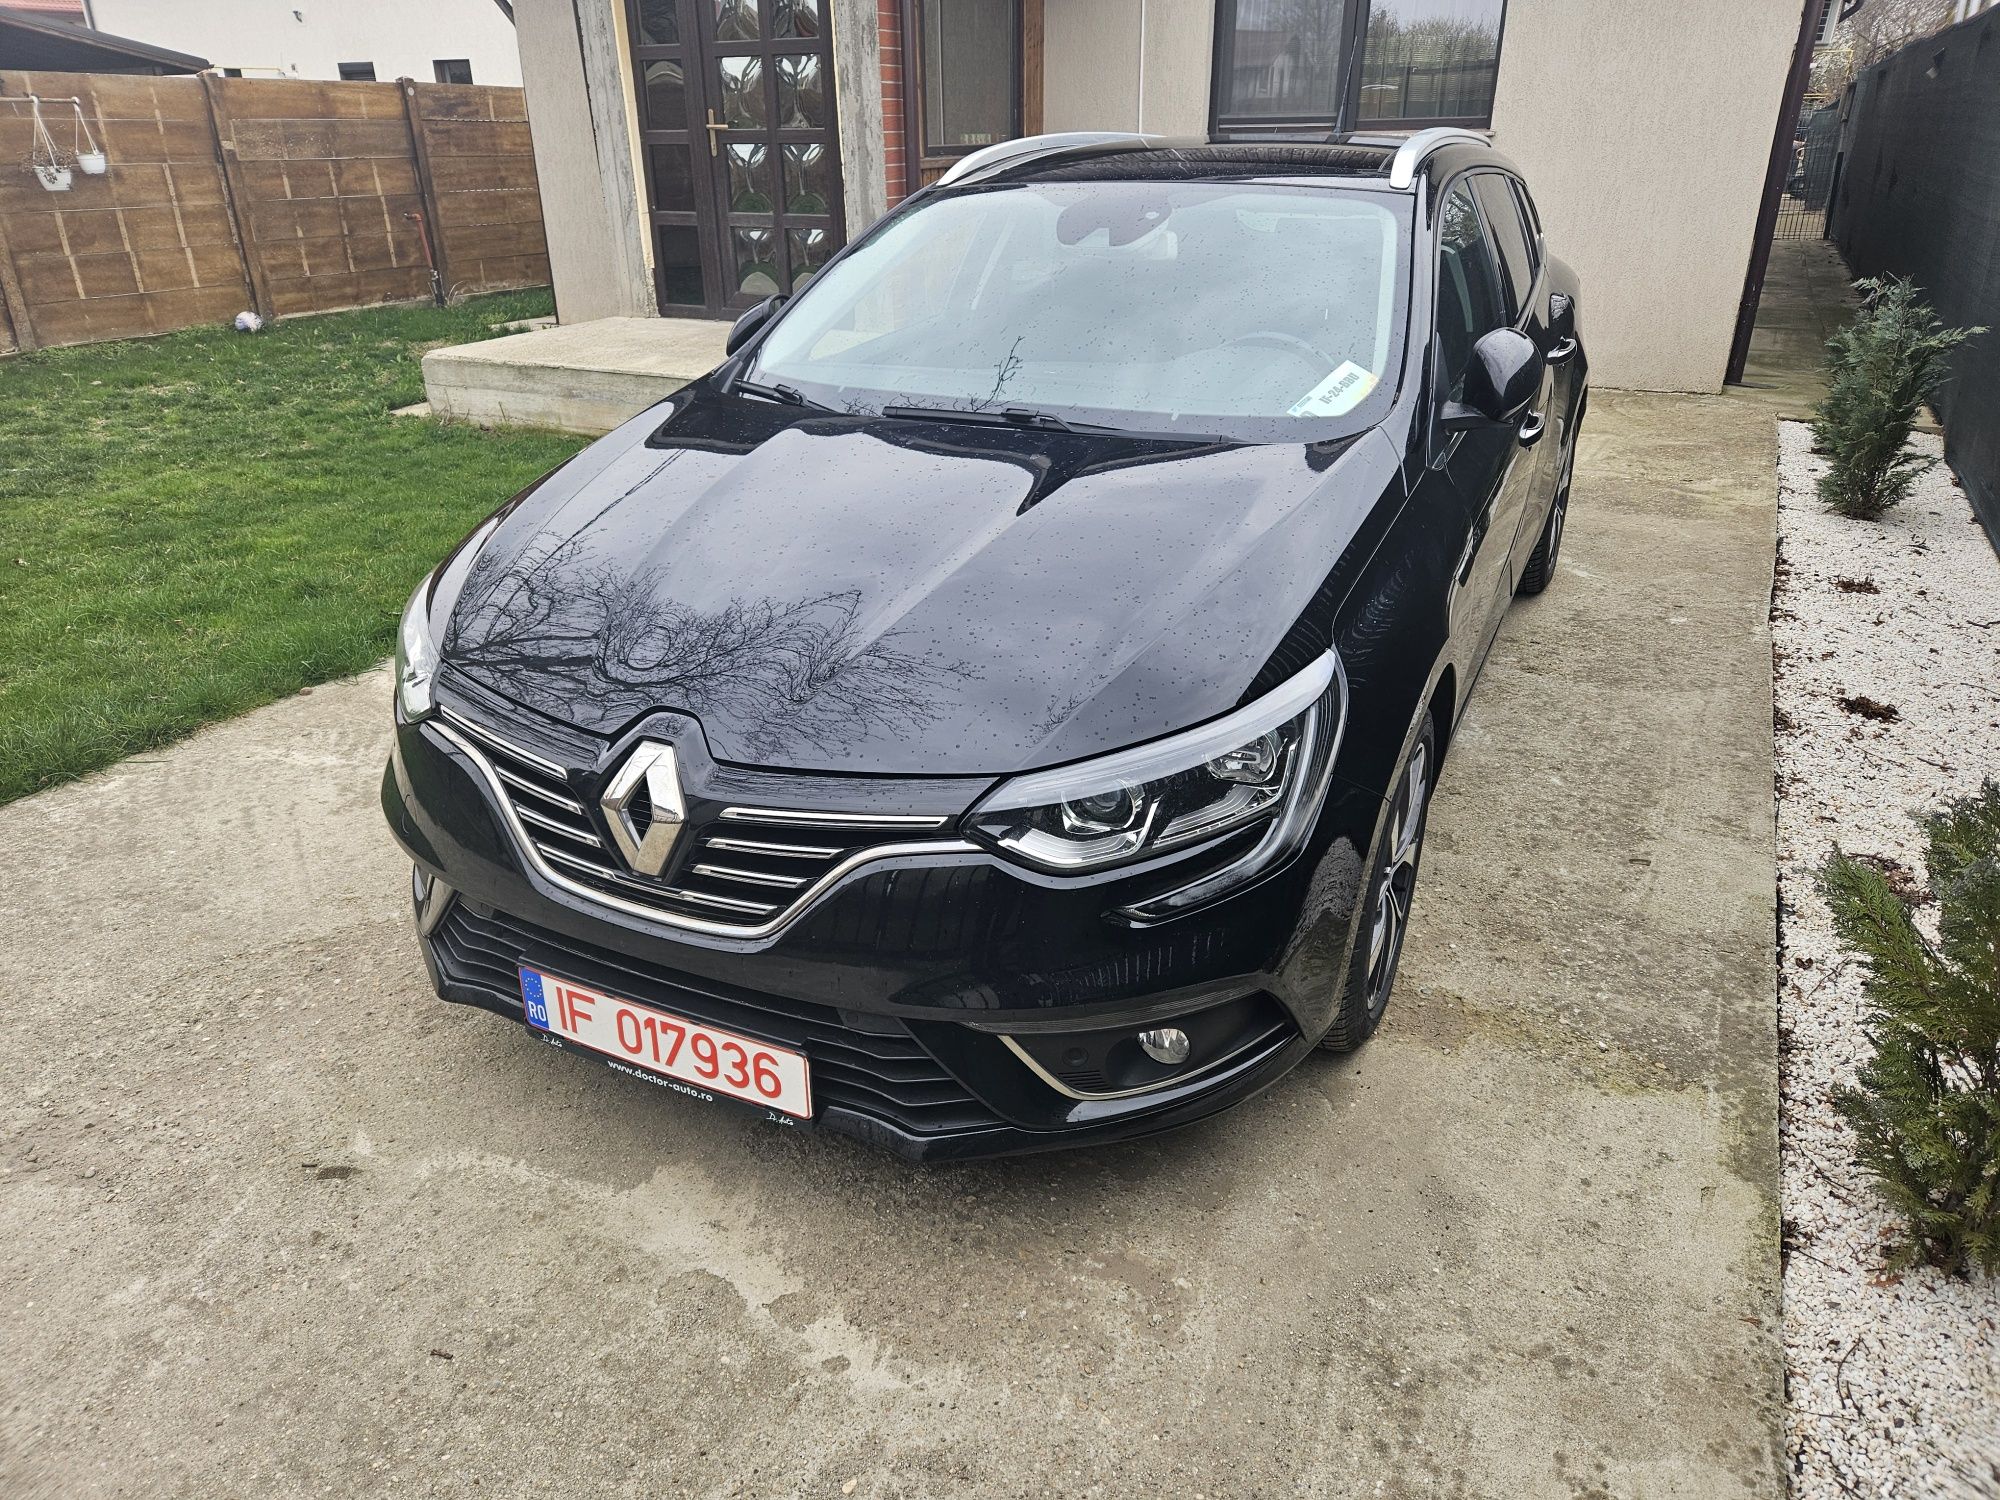 Renault megane 4 bose edition